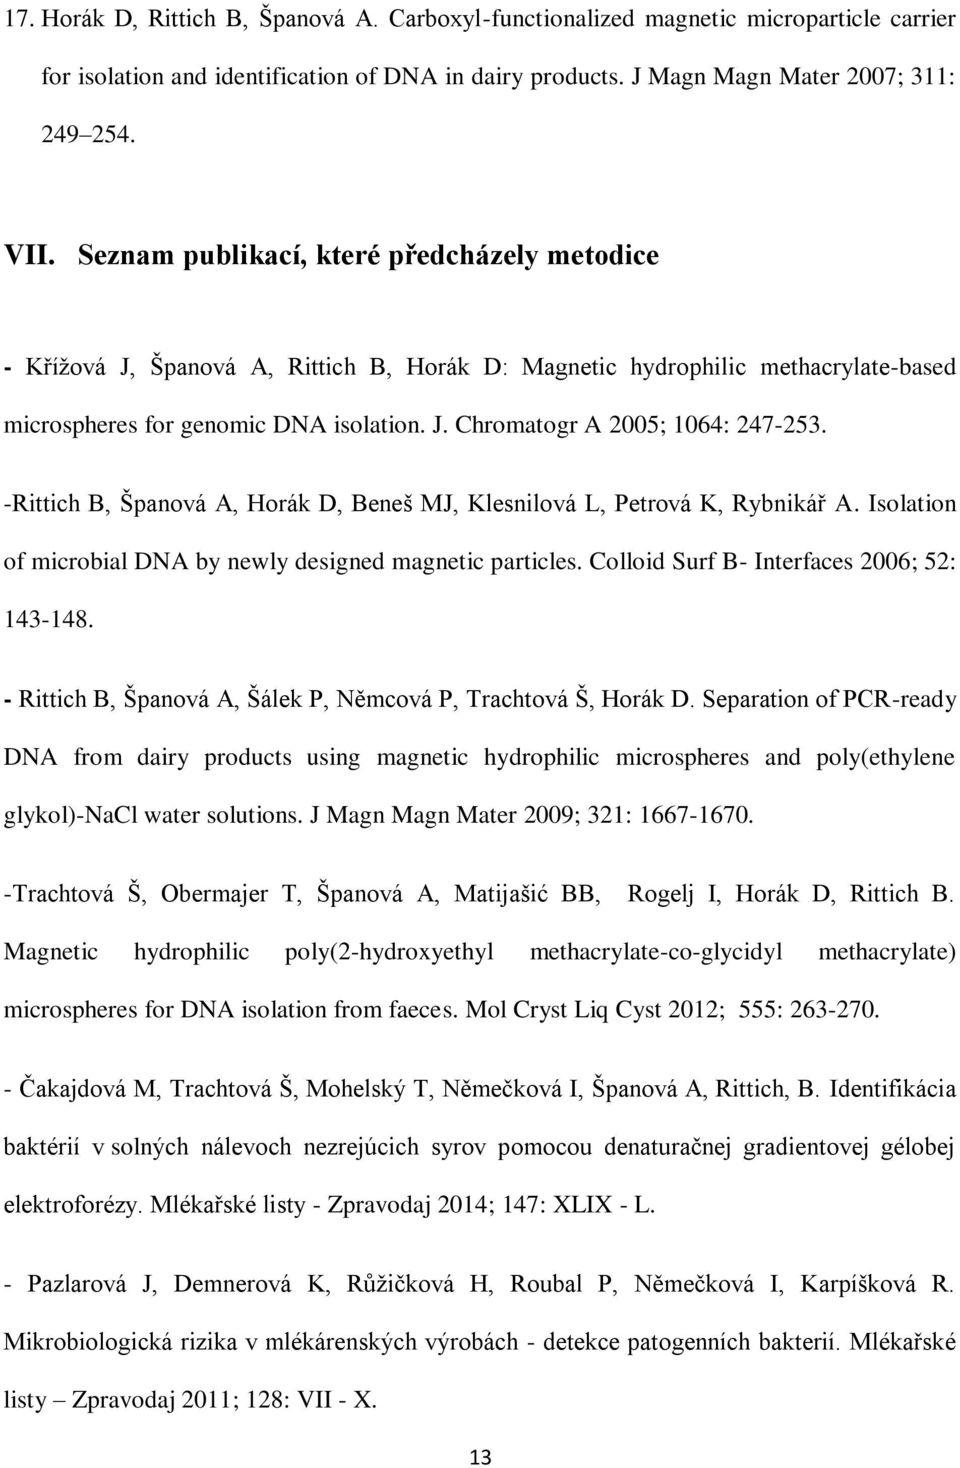 -Rittich B, Španová A, Horák D, Beneš MJ, Klesnilová L, Petrová K, Rybnikář A. Isolation of microbial DNA by newly designed magnetic particles. Colloid Surf B- Interfaces 2006; 52: 143-148.